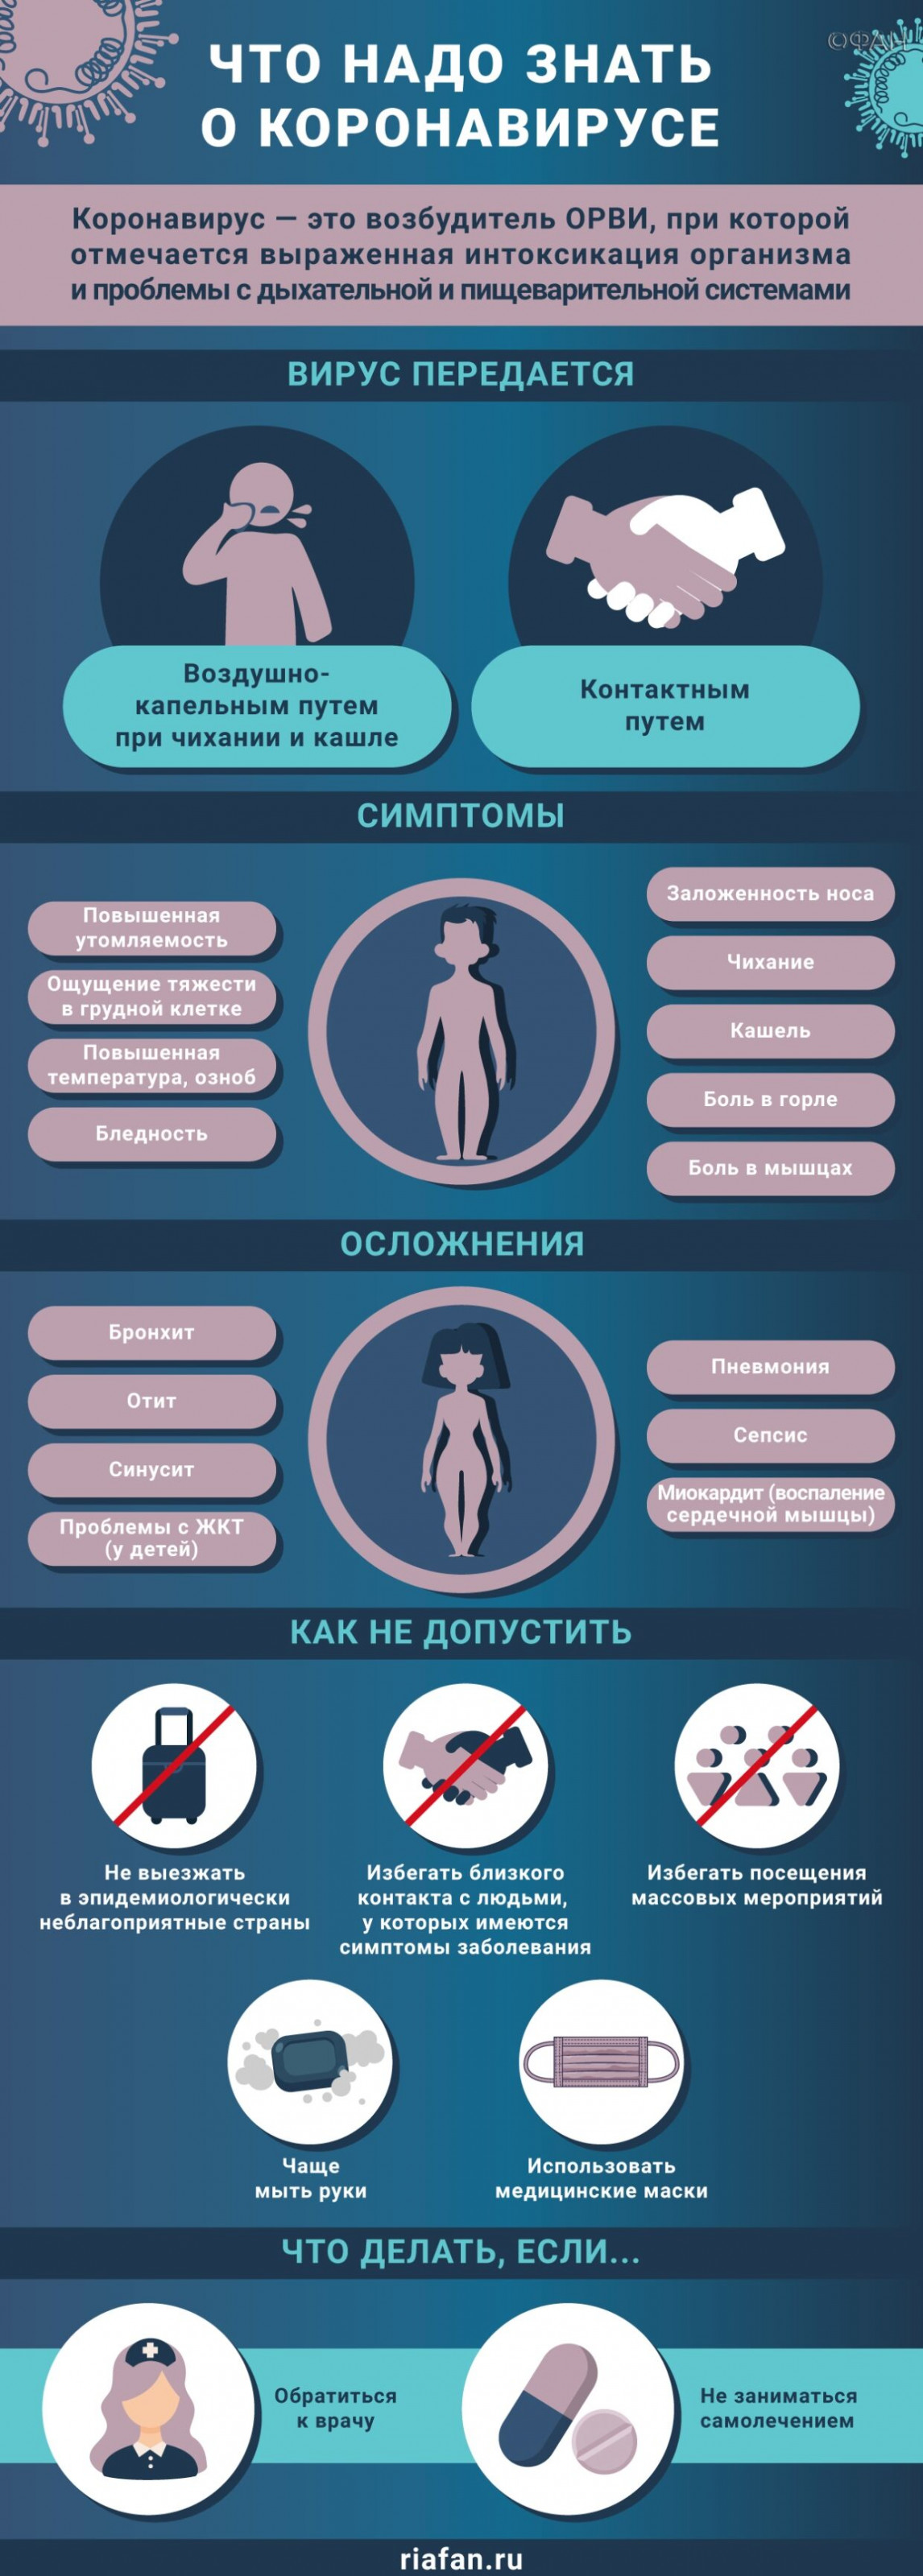 Медики за сутки выявили еще 234 случая коронавируса в Петербурге